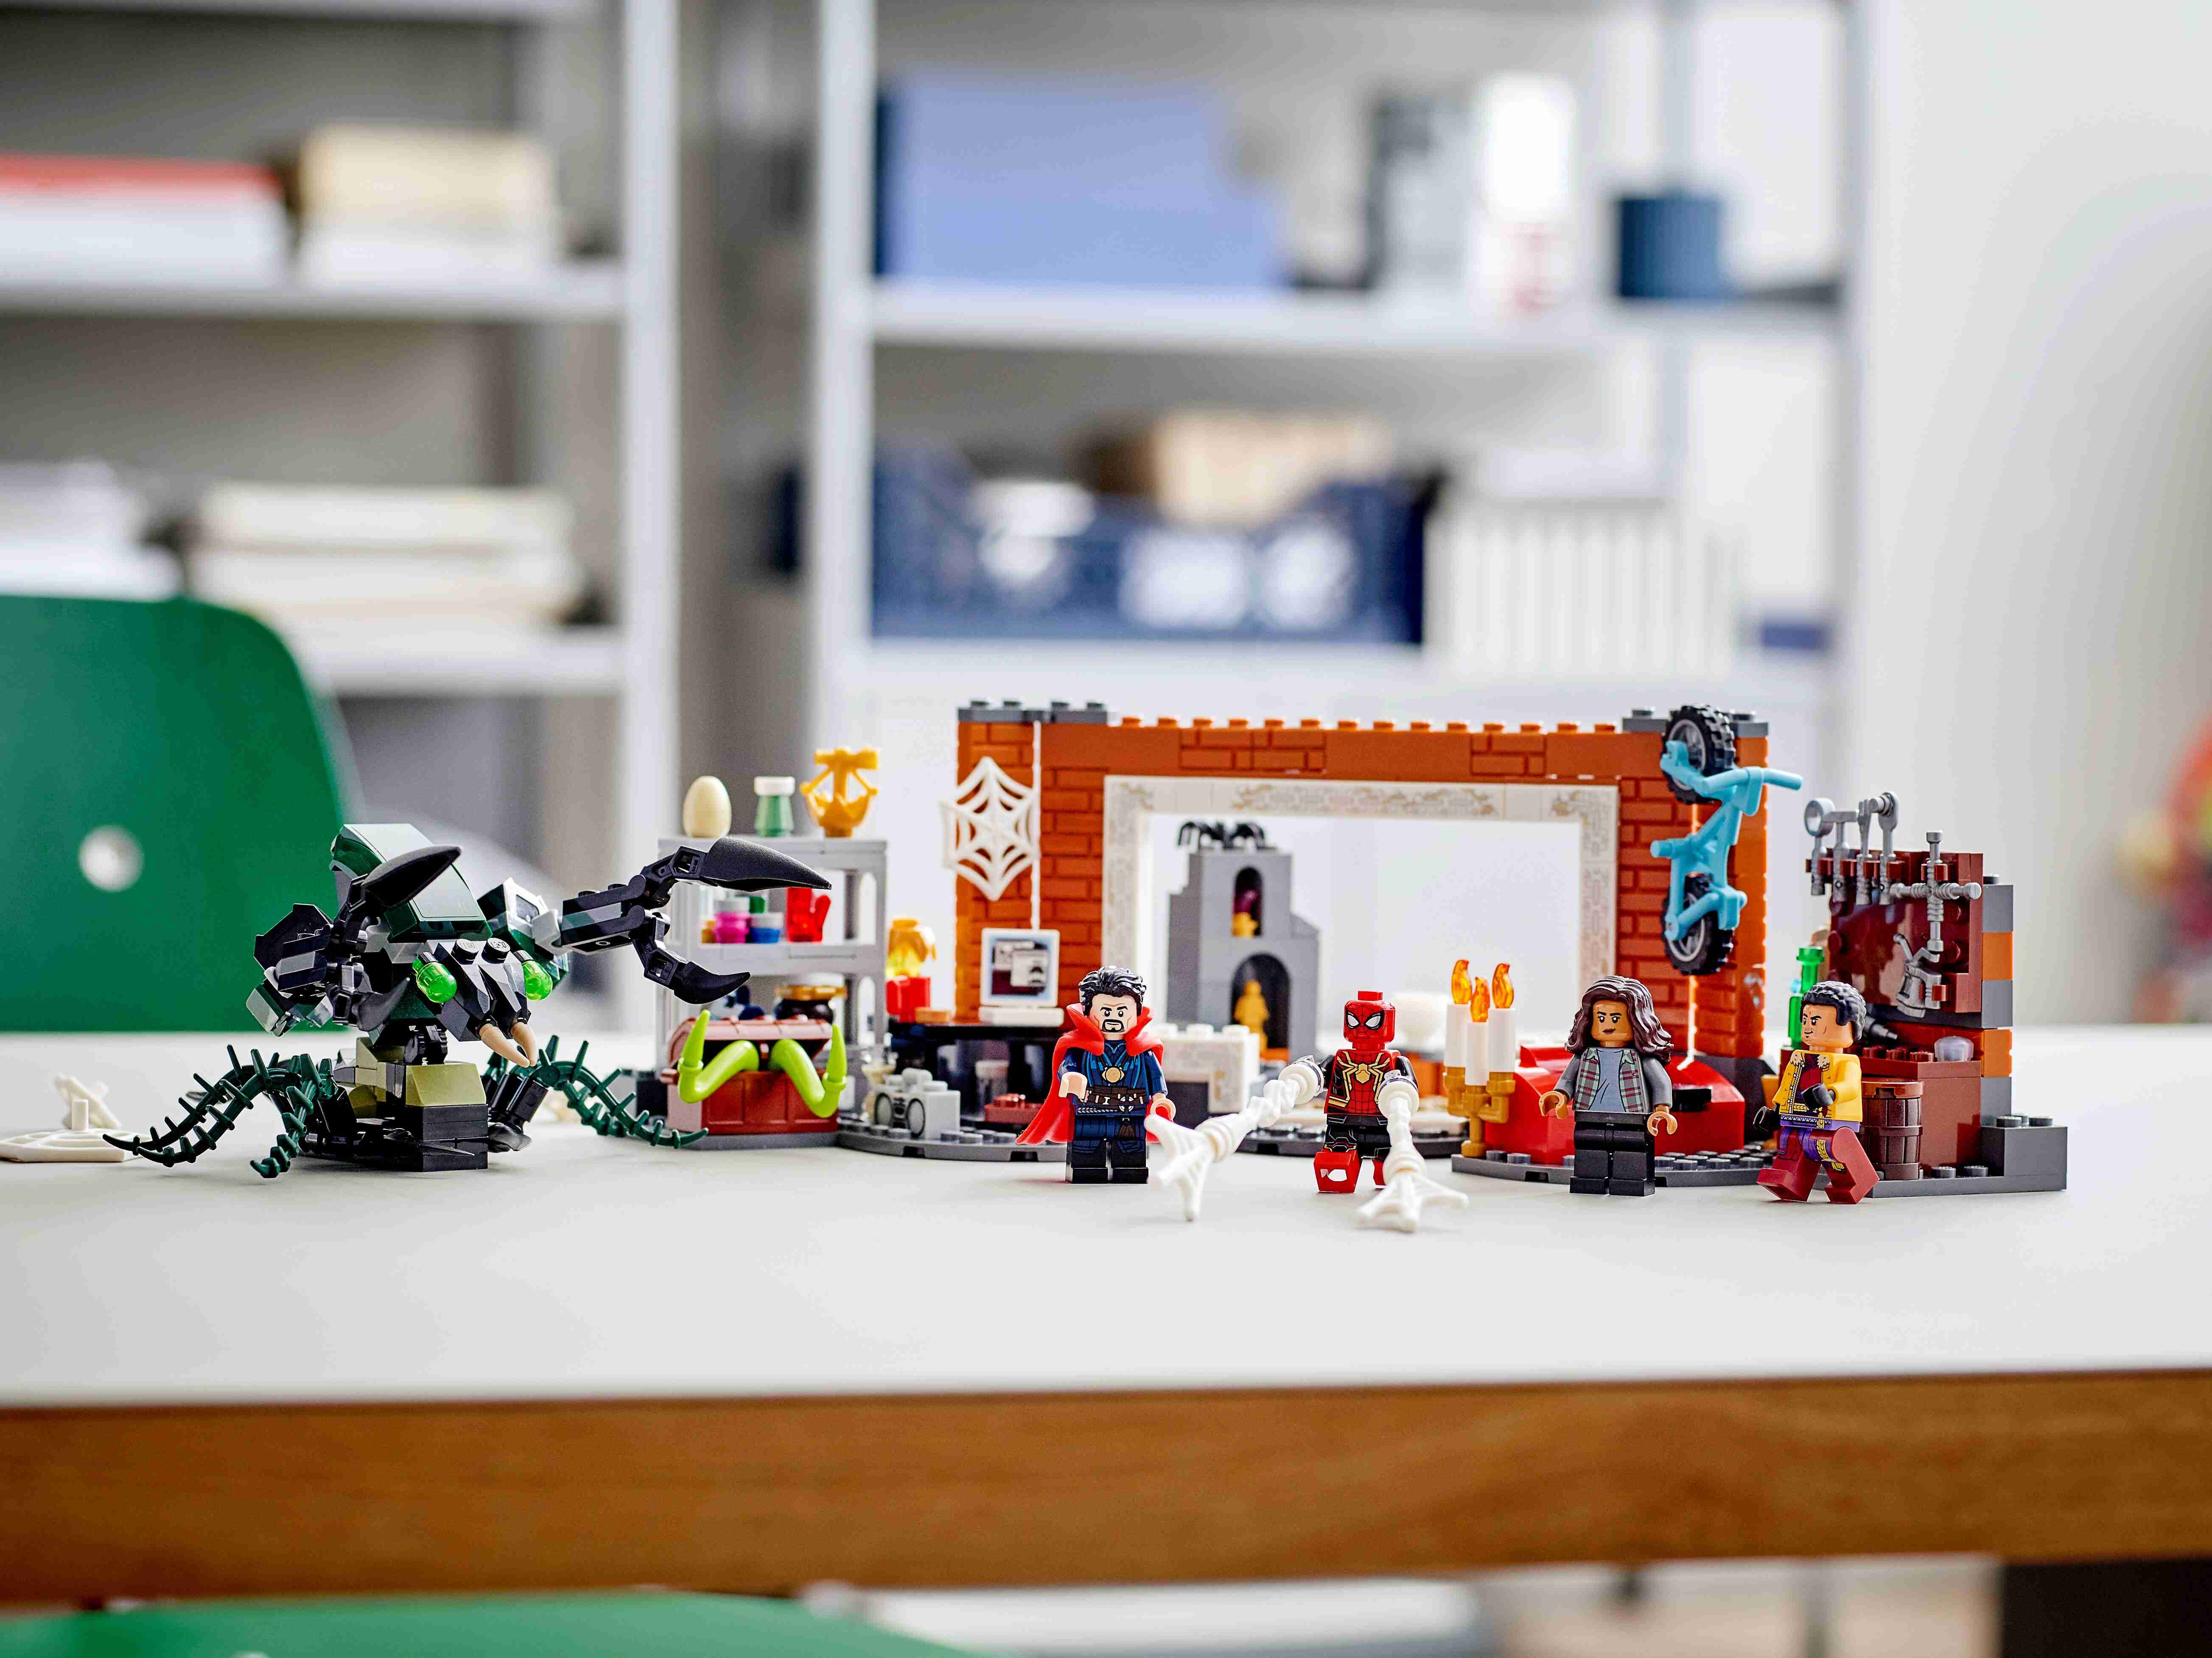 LEGO 76185 Marvel Spider-Man in der Sanctum Werkstatt mit Monsterinsekt